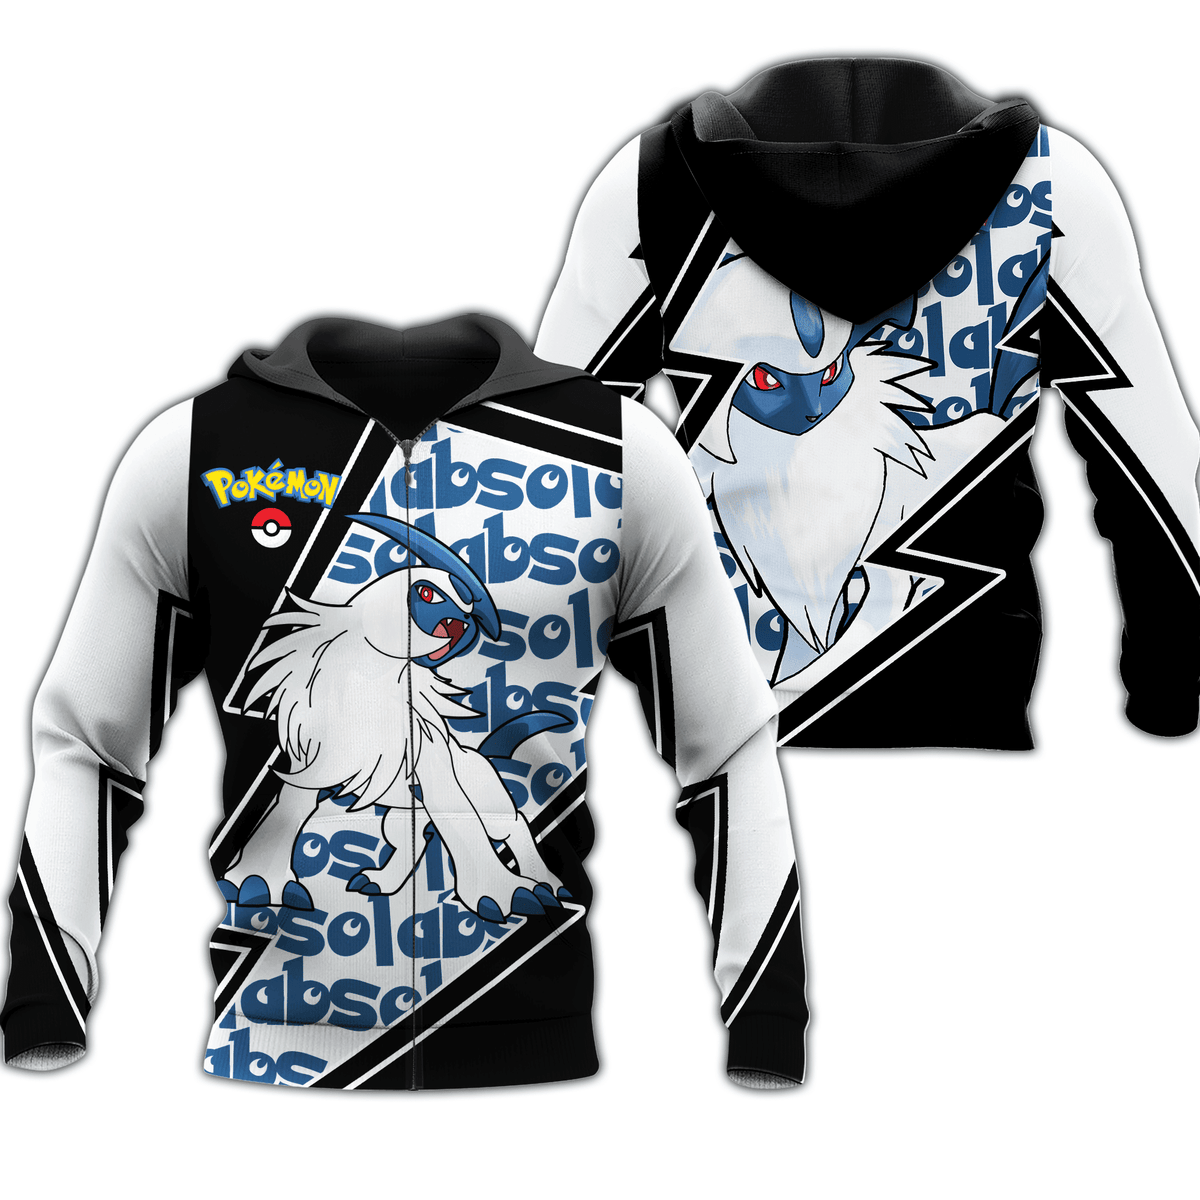 Absol Zip Hoodie Costume Pokemon Shirt Fan Gift Idea VA06 - 1 - Gear Otaku